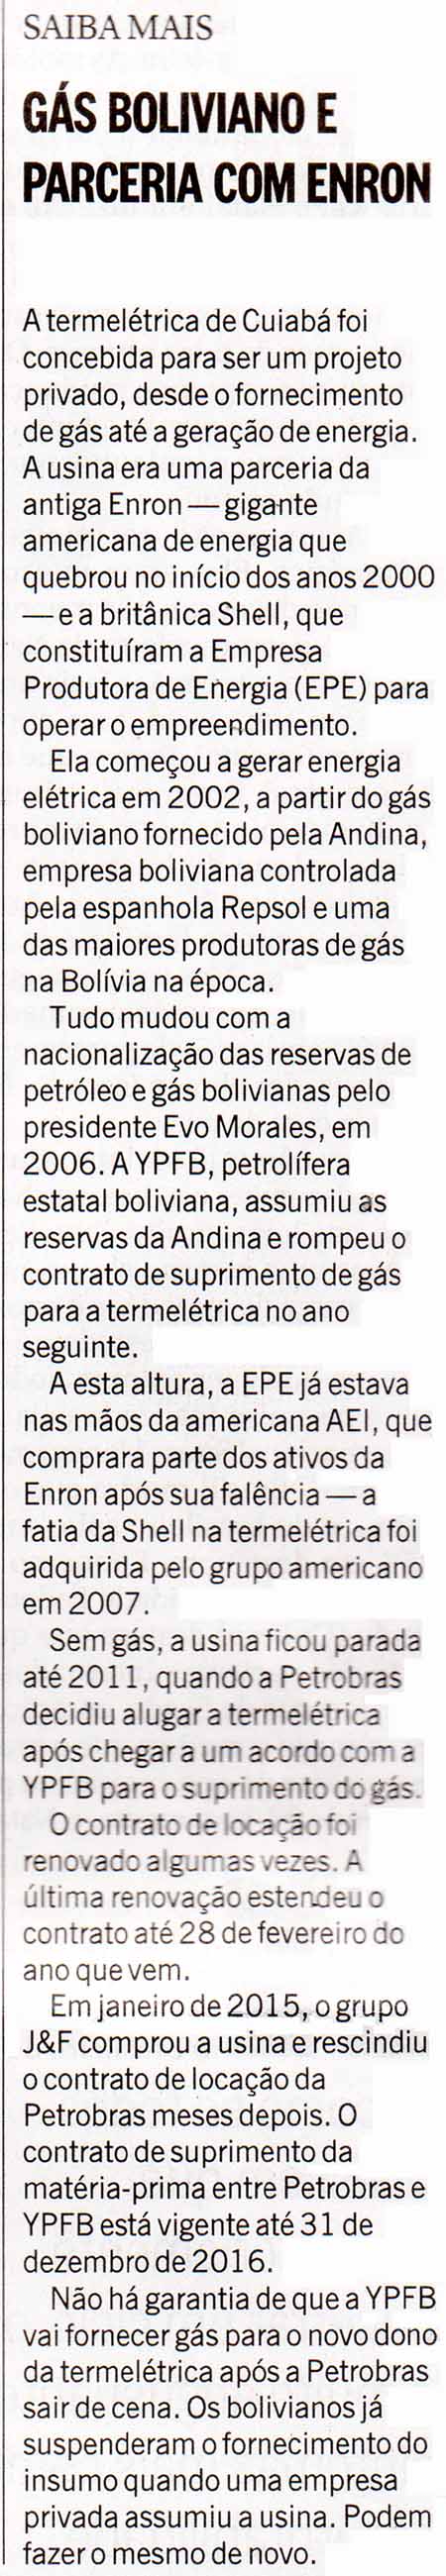 O Globo - 20/12/2015 - Saiba mais: Gs boliviano e parceira com Enron